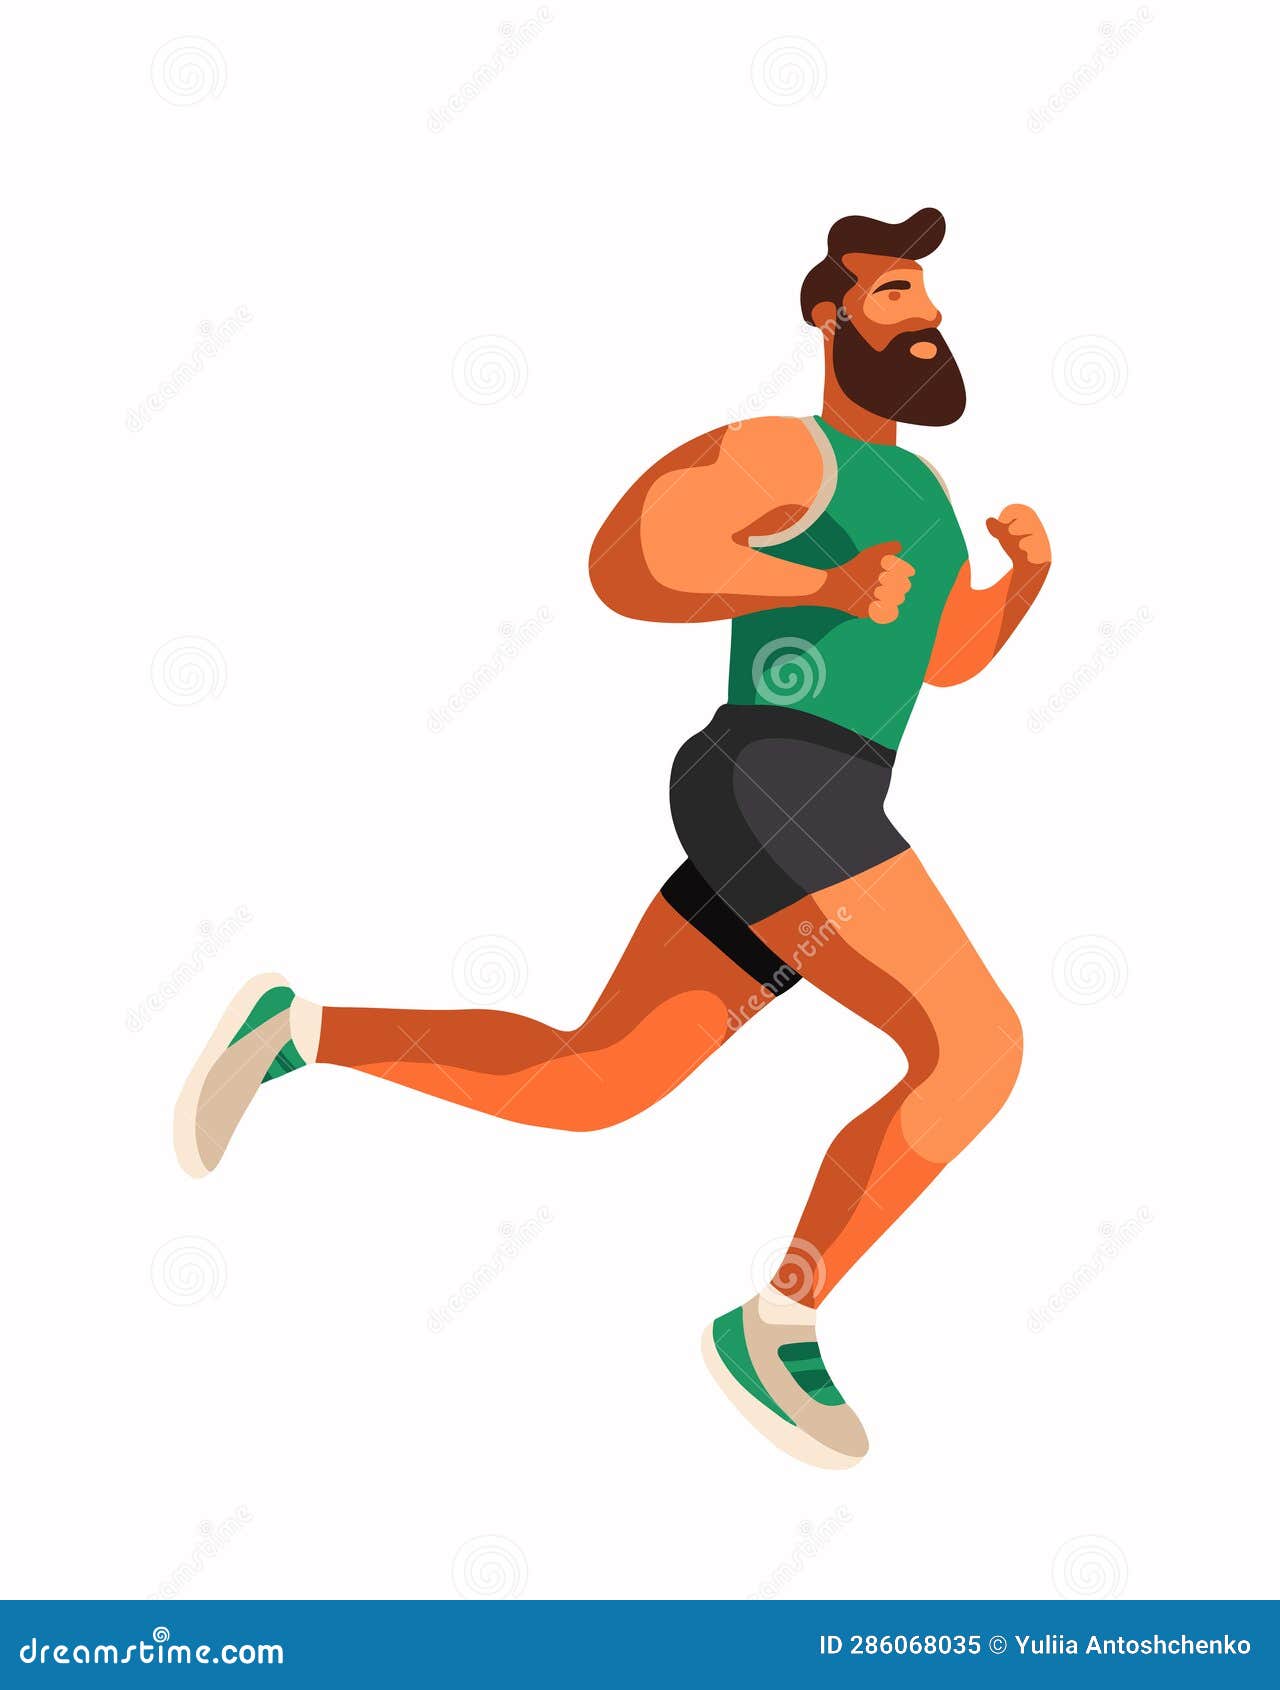 A man running. stock illustration. Illustration of fitness - 286068035